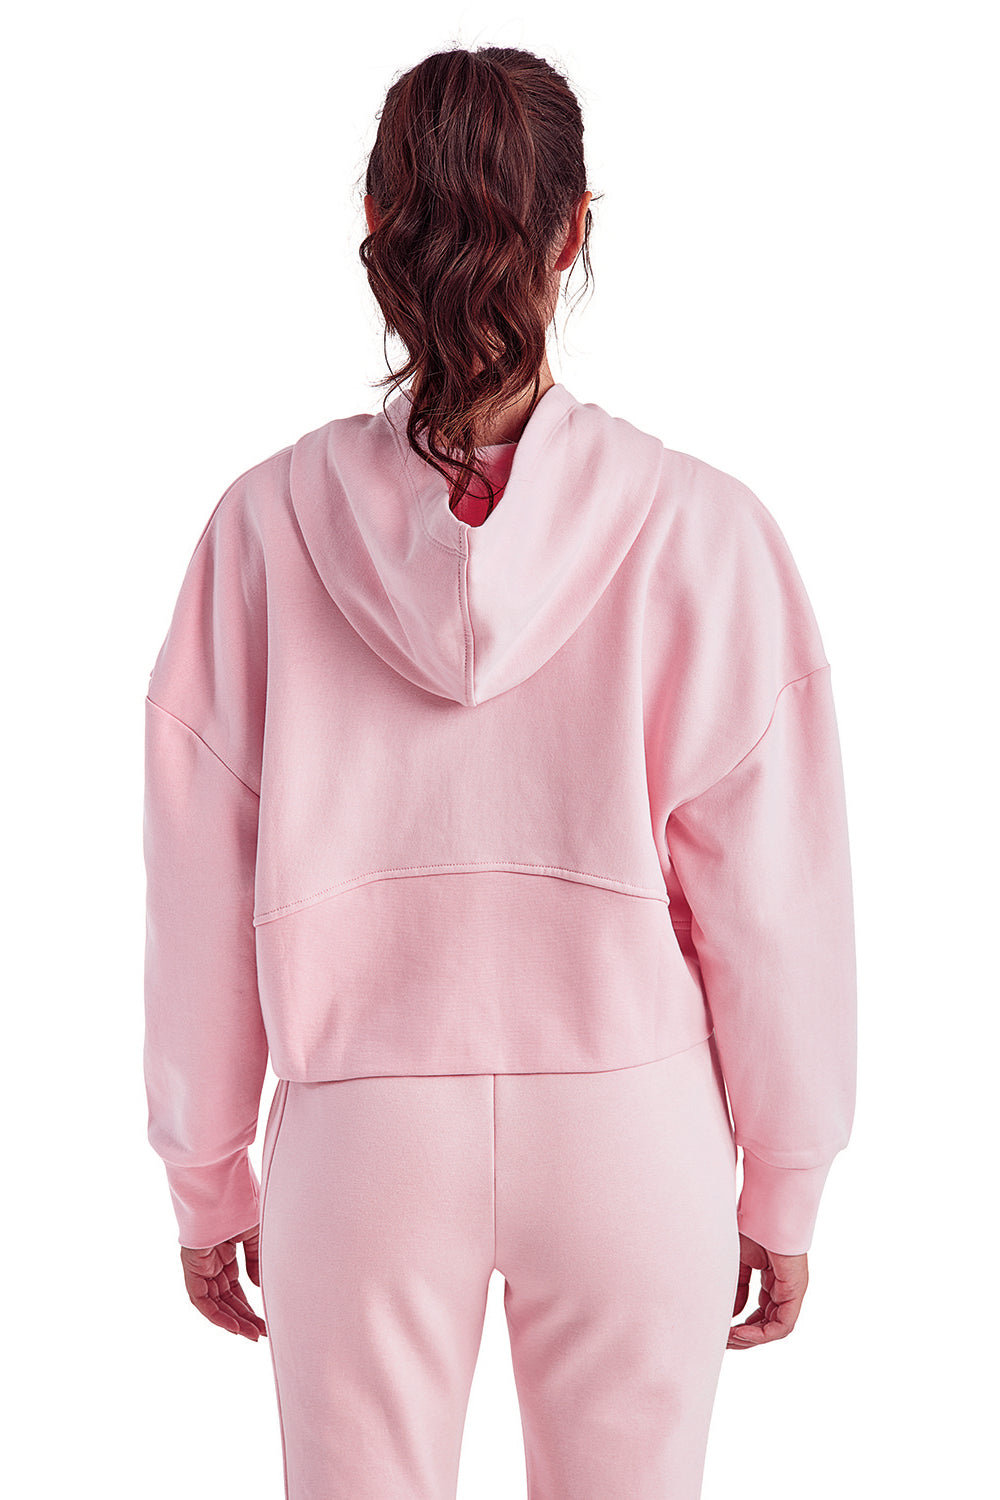 TriDri TD077 Womens Alice 1/4 Zip Hooded Sweatshirt Hoodie Light Pink Back